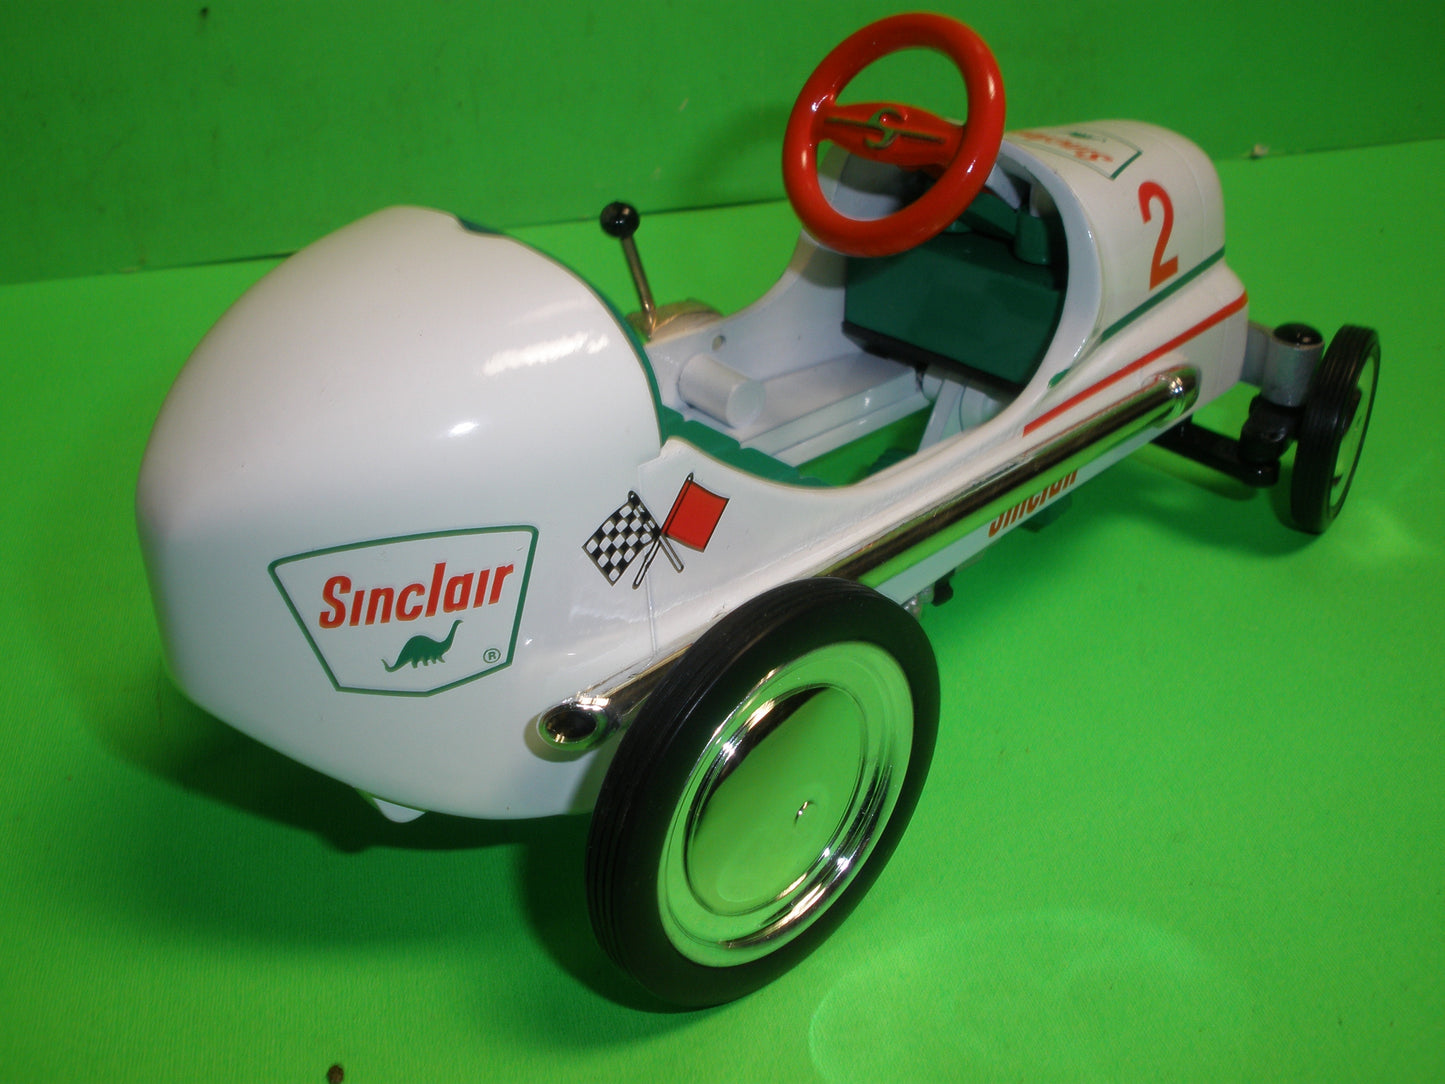 #2 - Sinclair 1947 BMC Pedal Car Racer